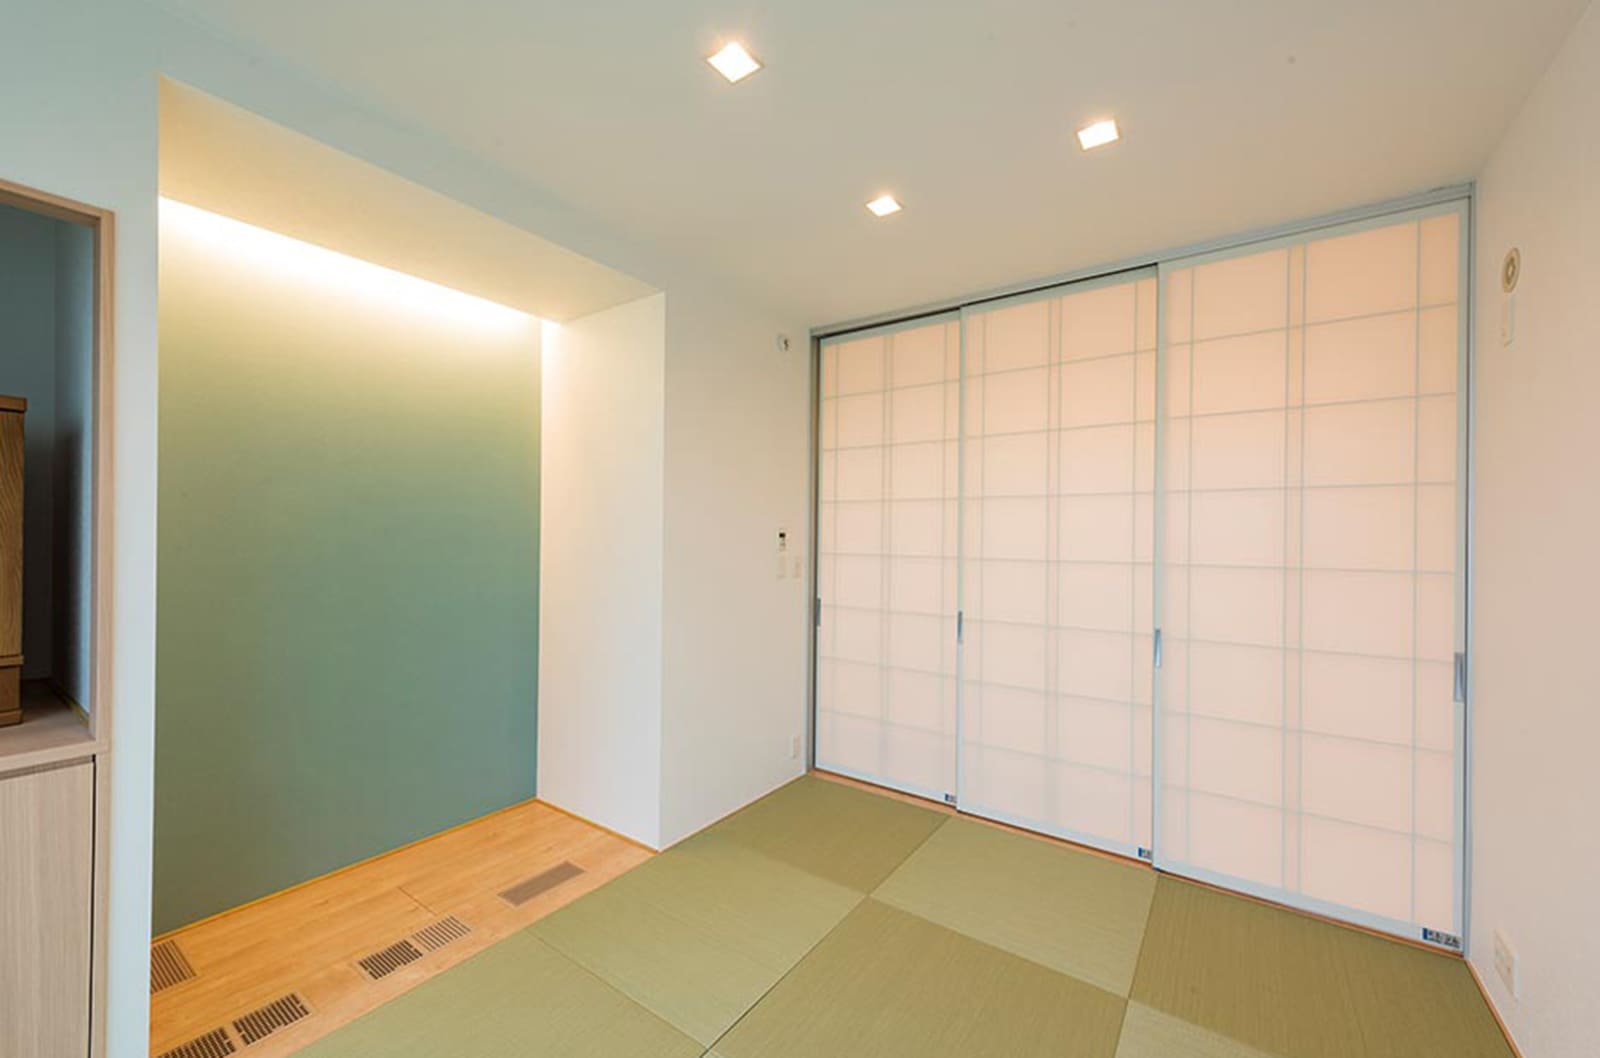 東京セキスイハイム建築実例_爽やかなグリーンのクロスを採用し清々しい雰囲気を演出したモダンな和室